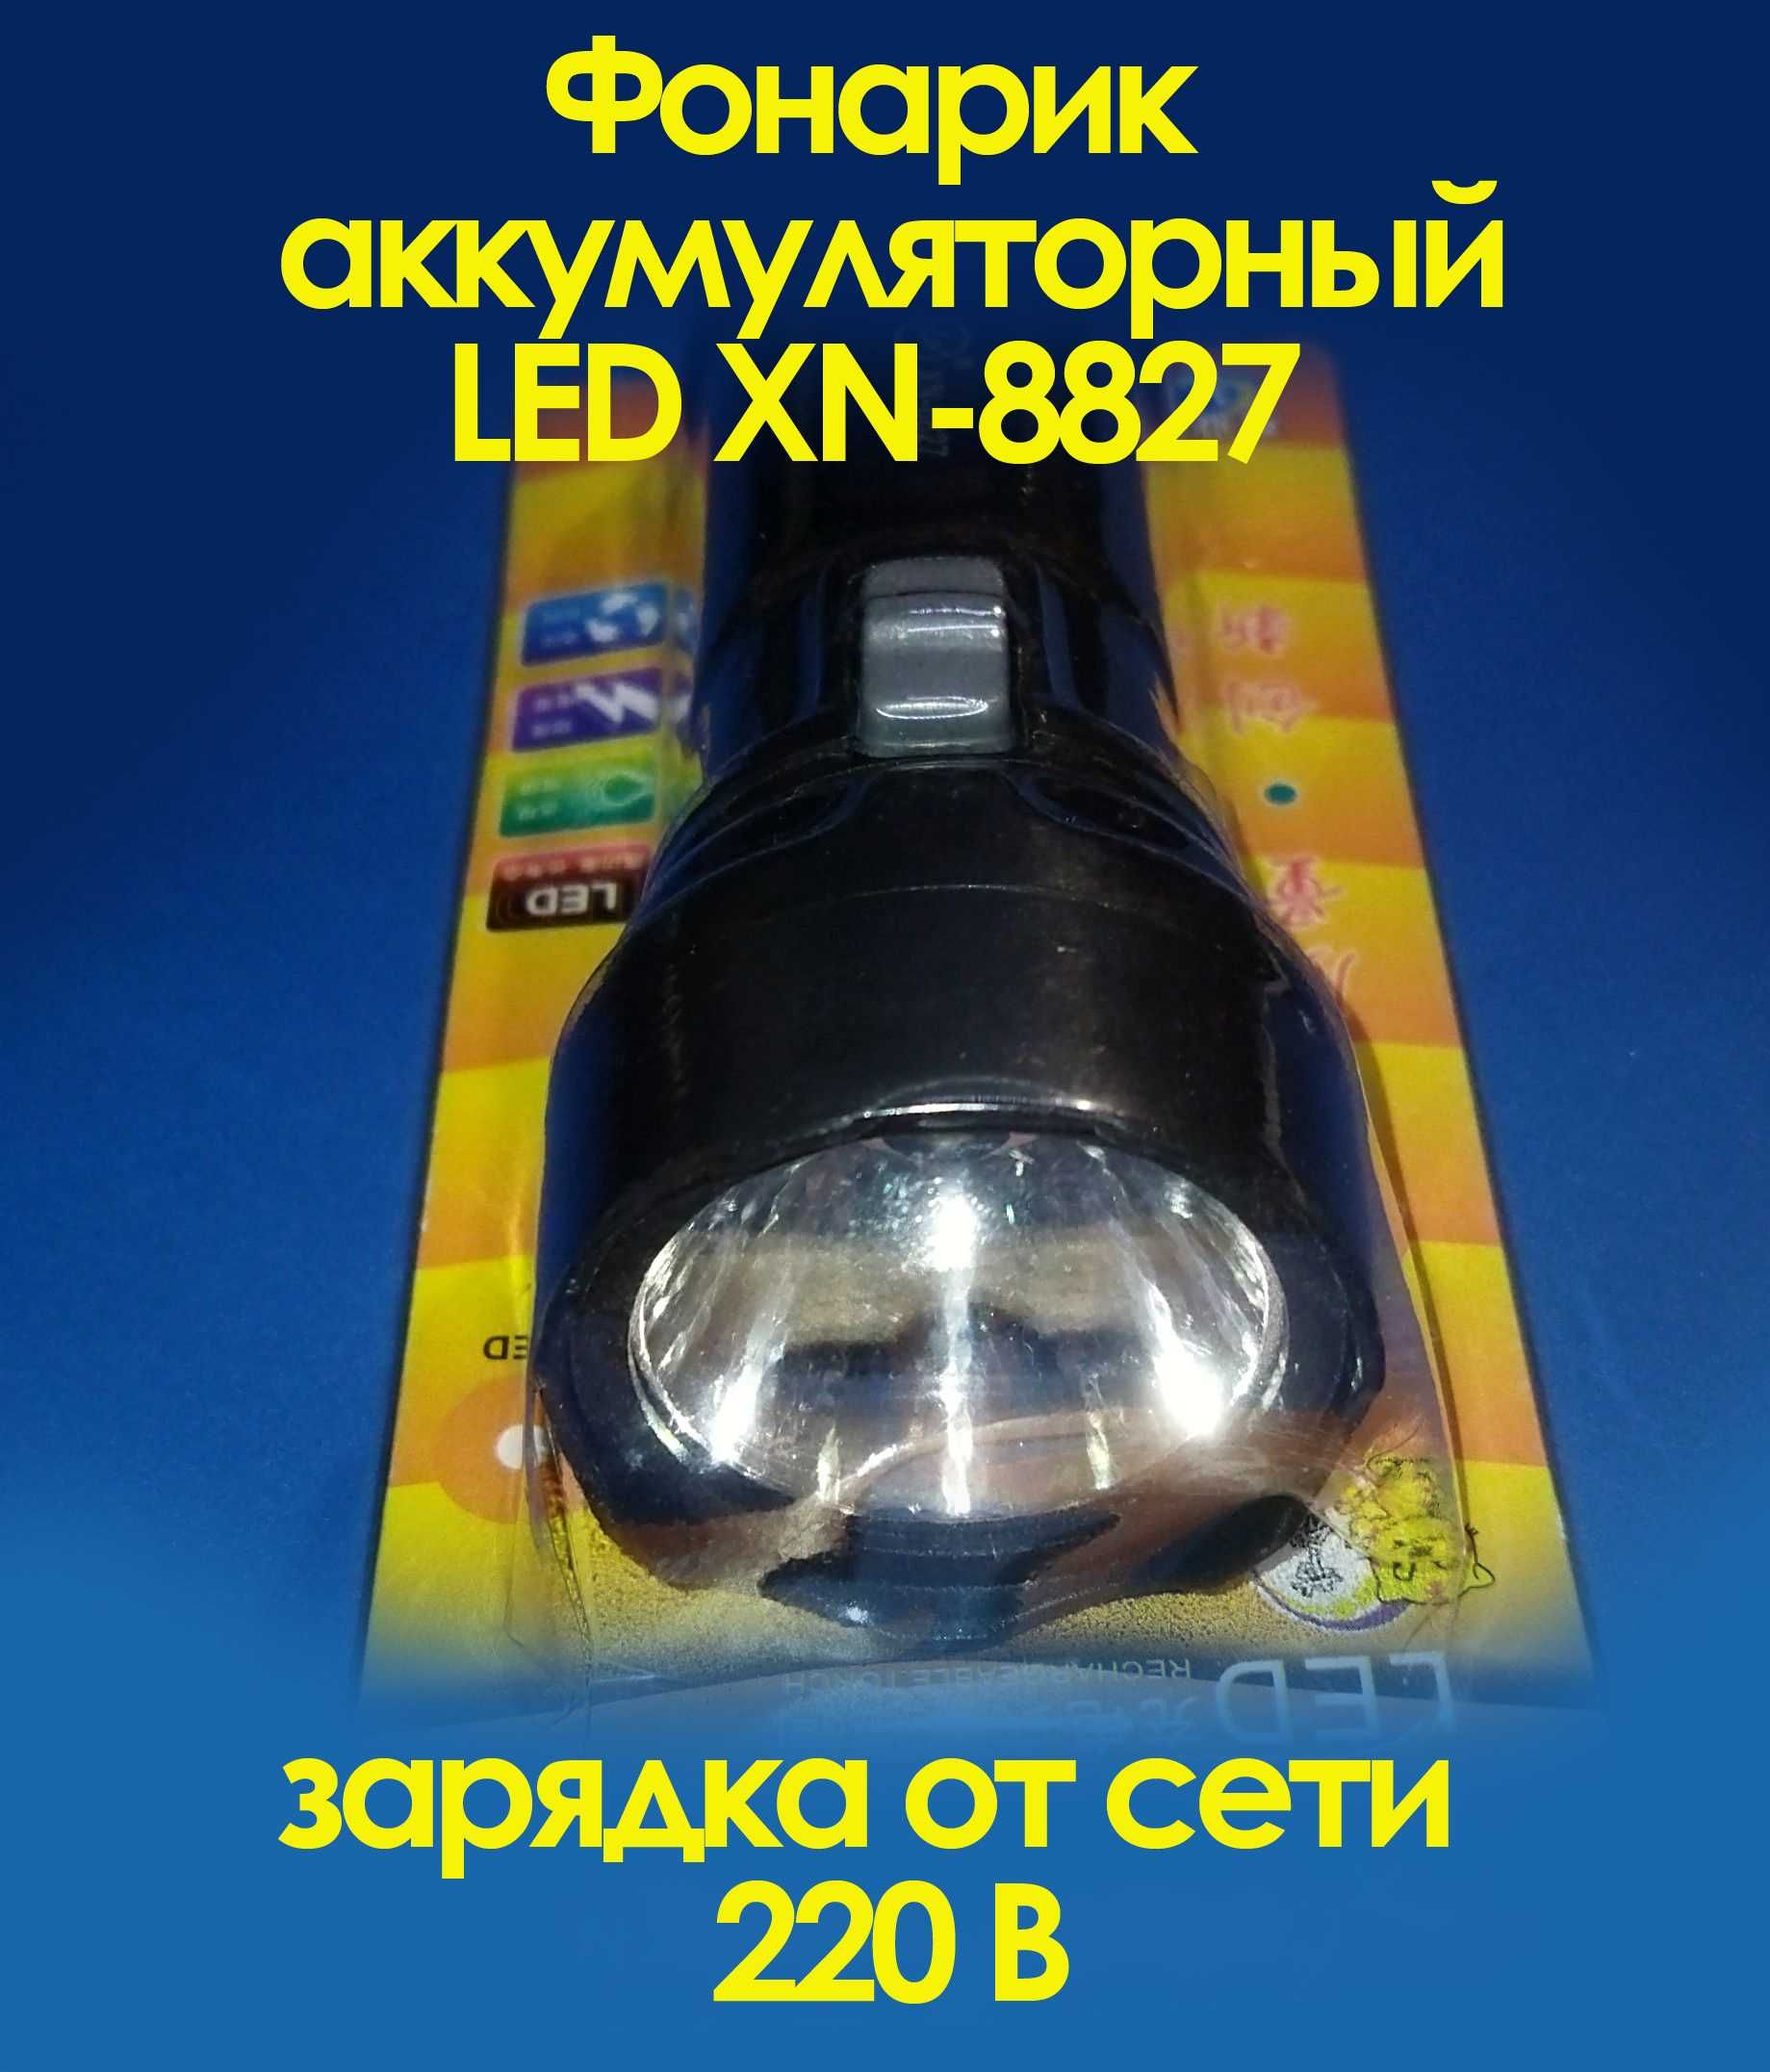 Фонарик аккумуляторный LED XN-8827 зарядка от сети 220 В